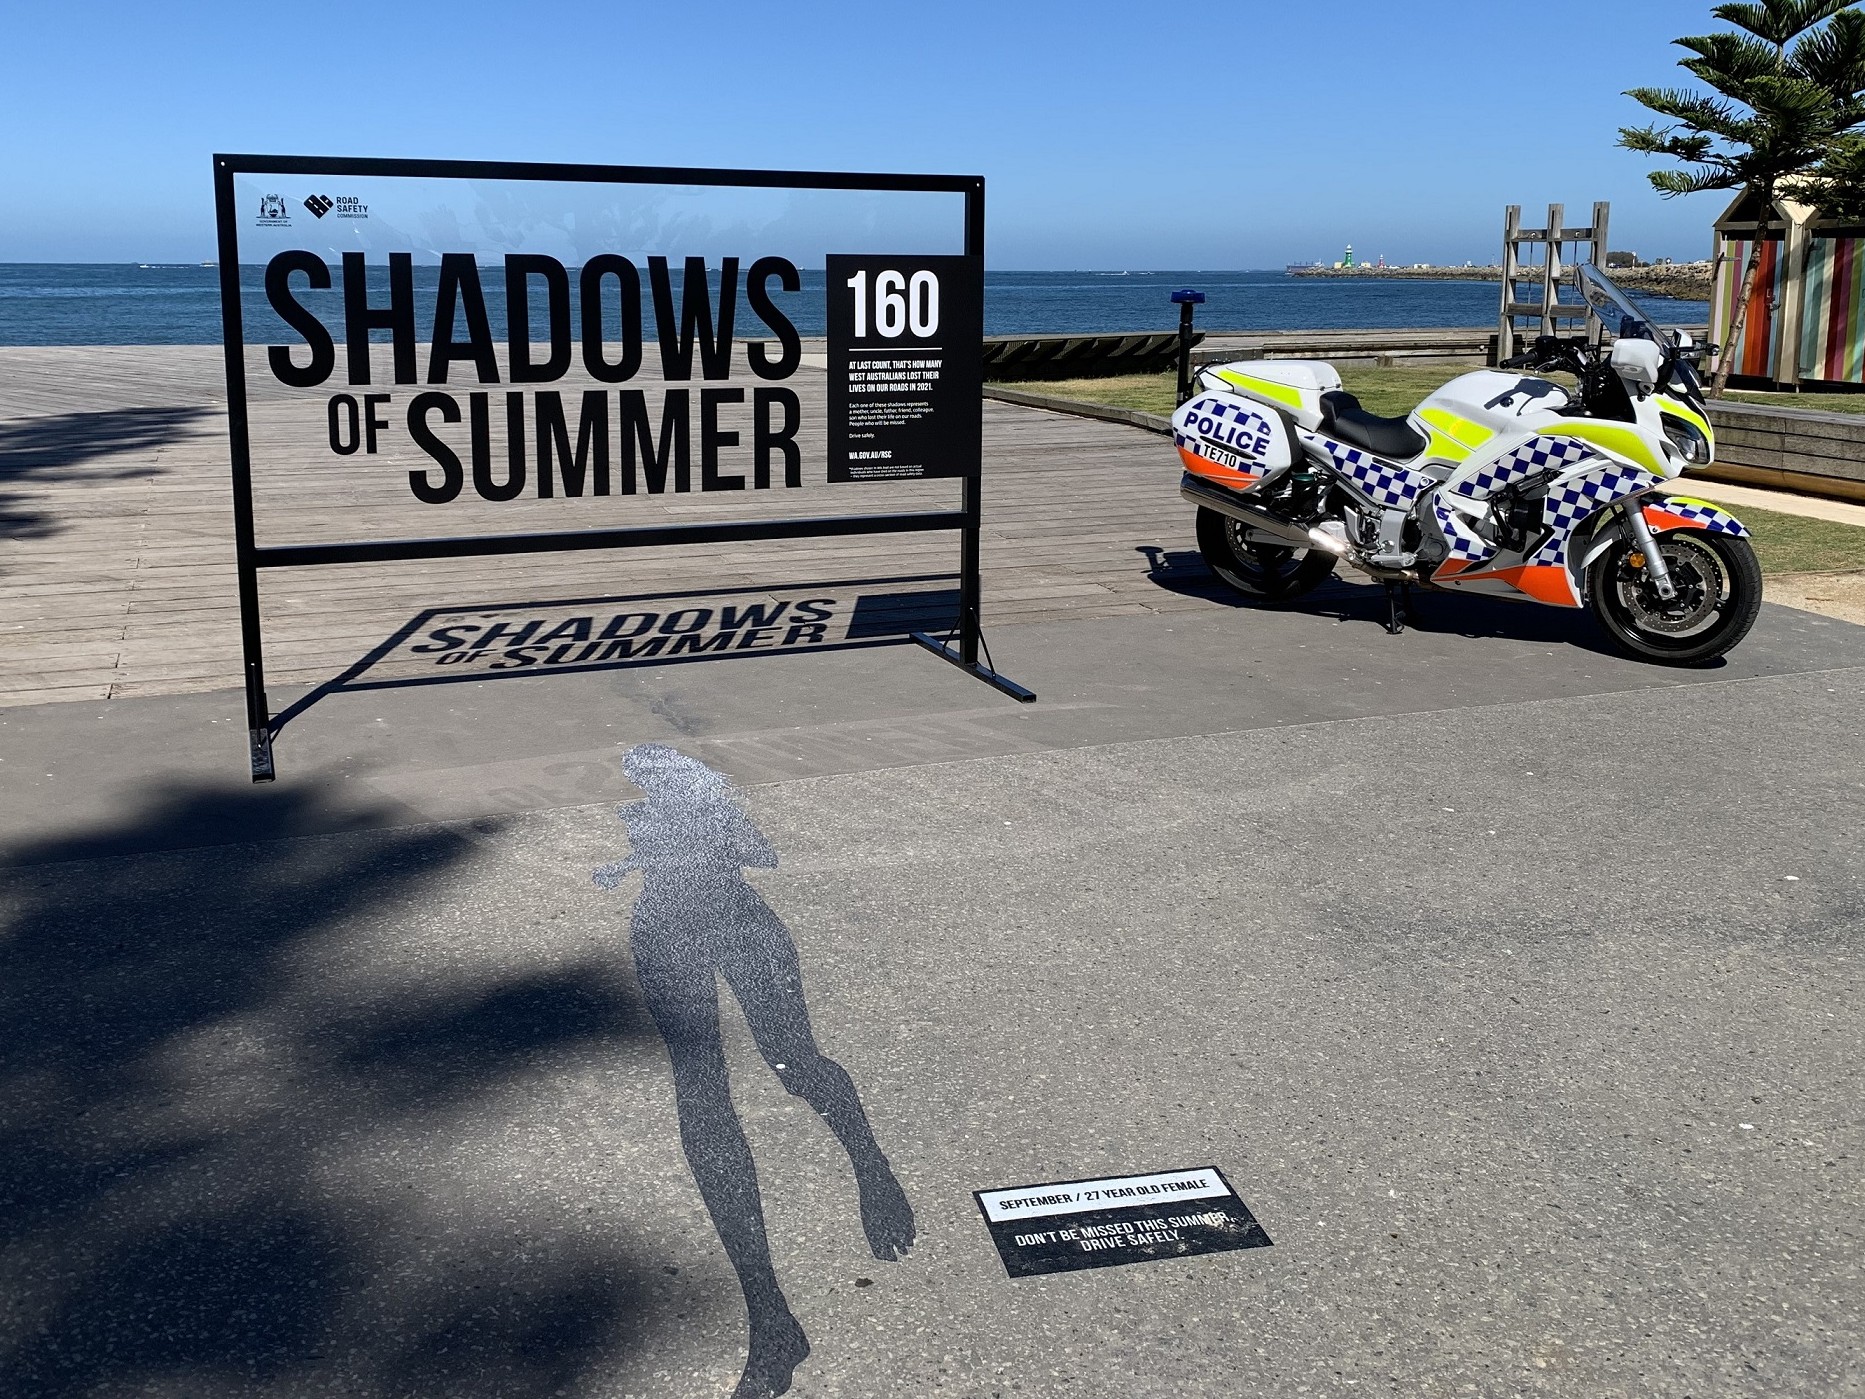 Police bike next to shadow on ground